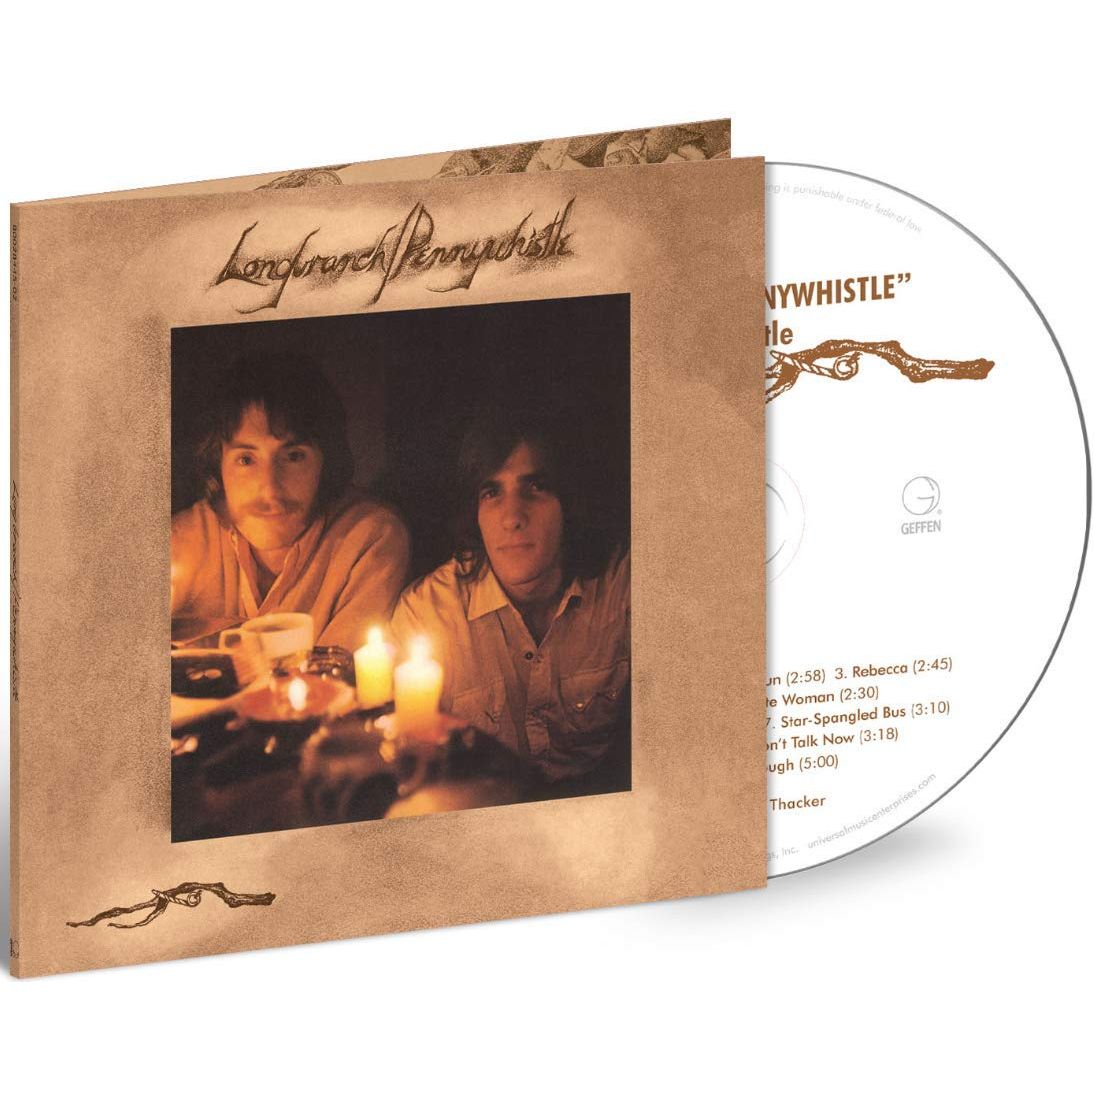 ロングブランチ/ペニーホイッスル / LONGBRANCH/PENNY WHISTLE (CD)